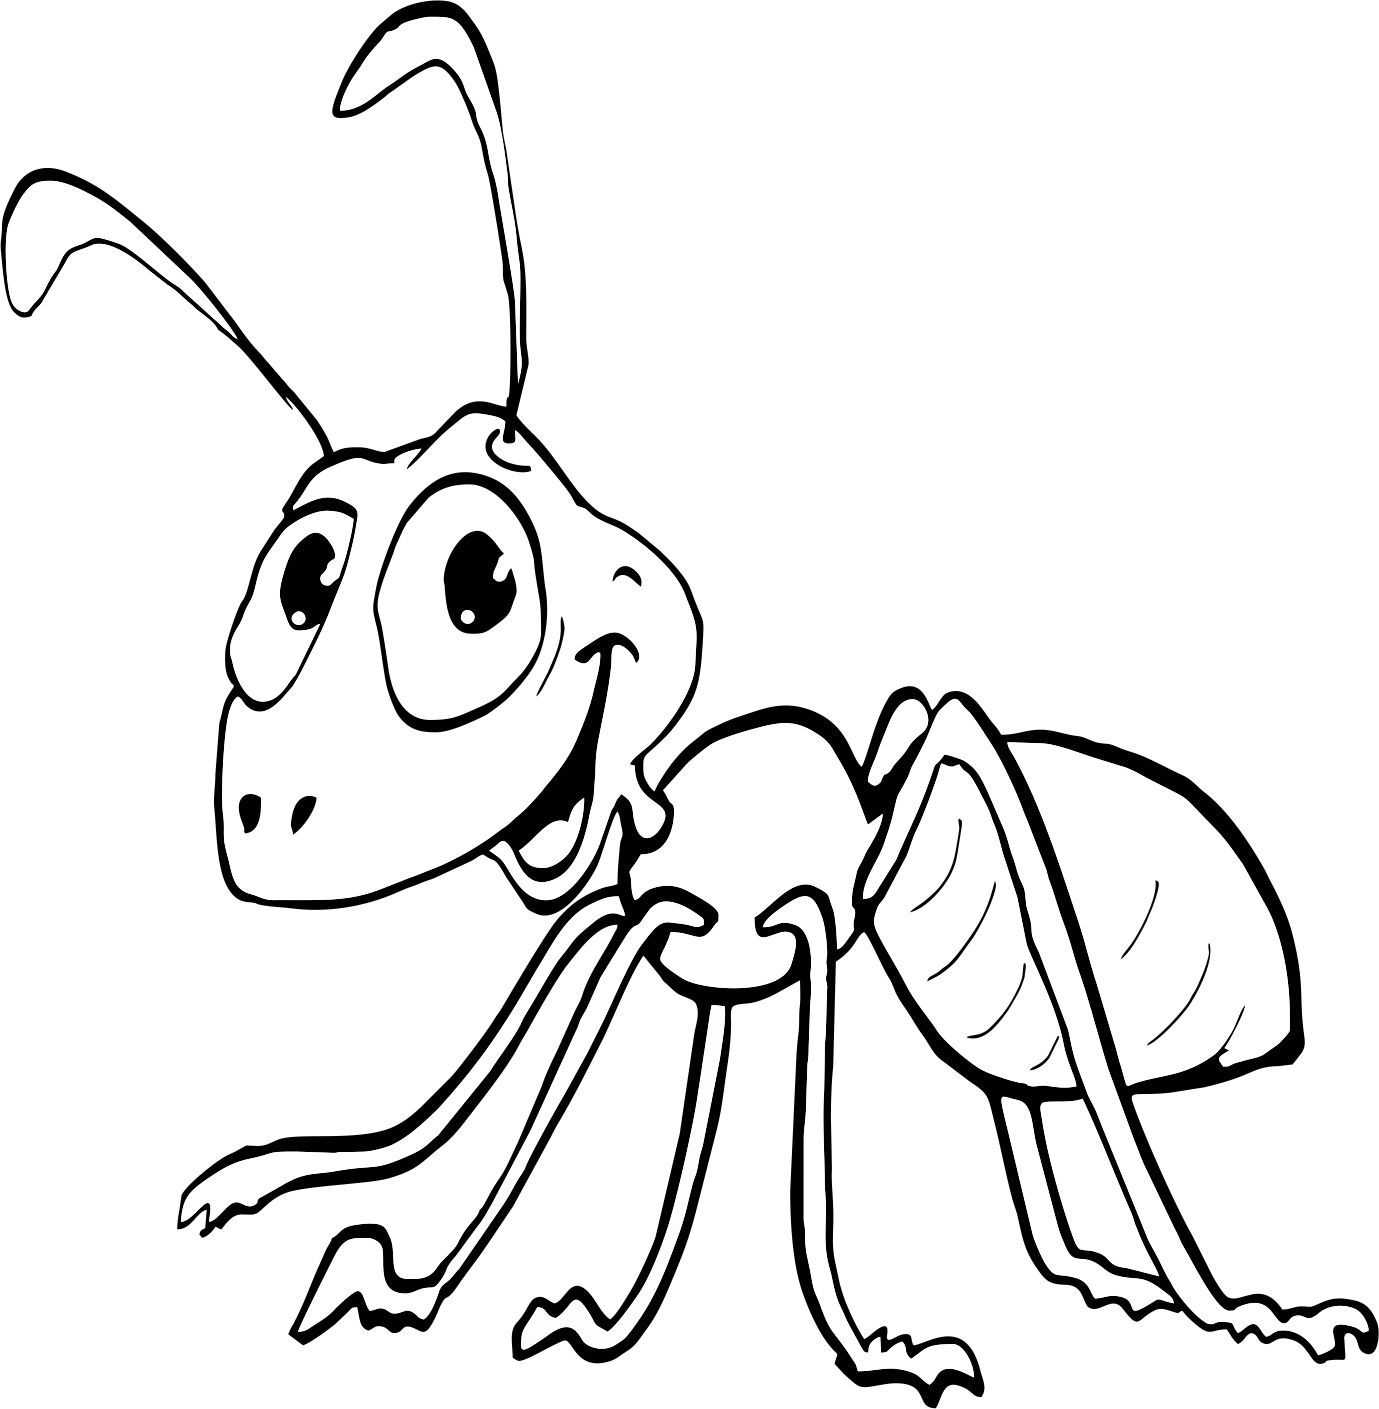 Муравей рисунок для детей карандашом – как нарисовать мультяшного муравья карандашом пошагово